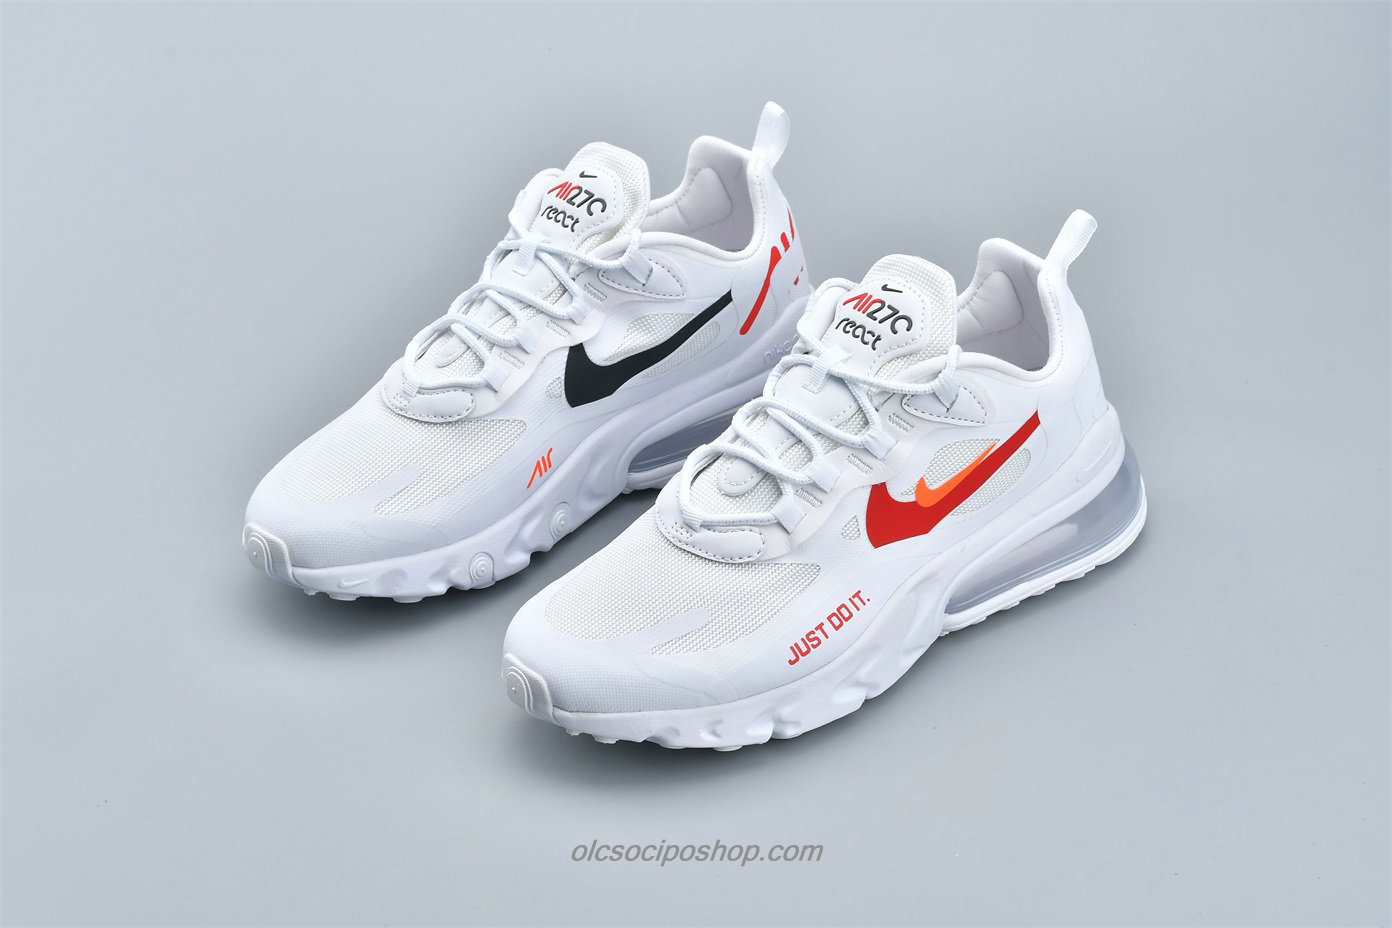 Nike Air Max 270 React Fehér/Piros Cipők (CT2203 100) - Kattintásra bezárul